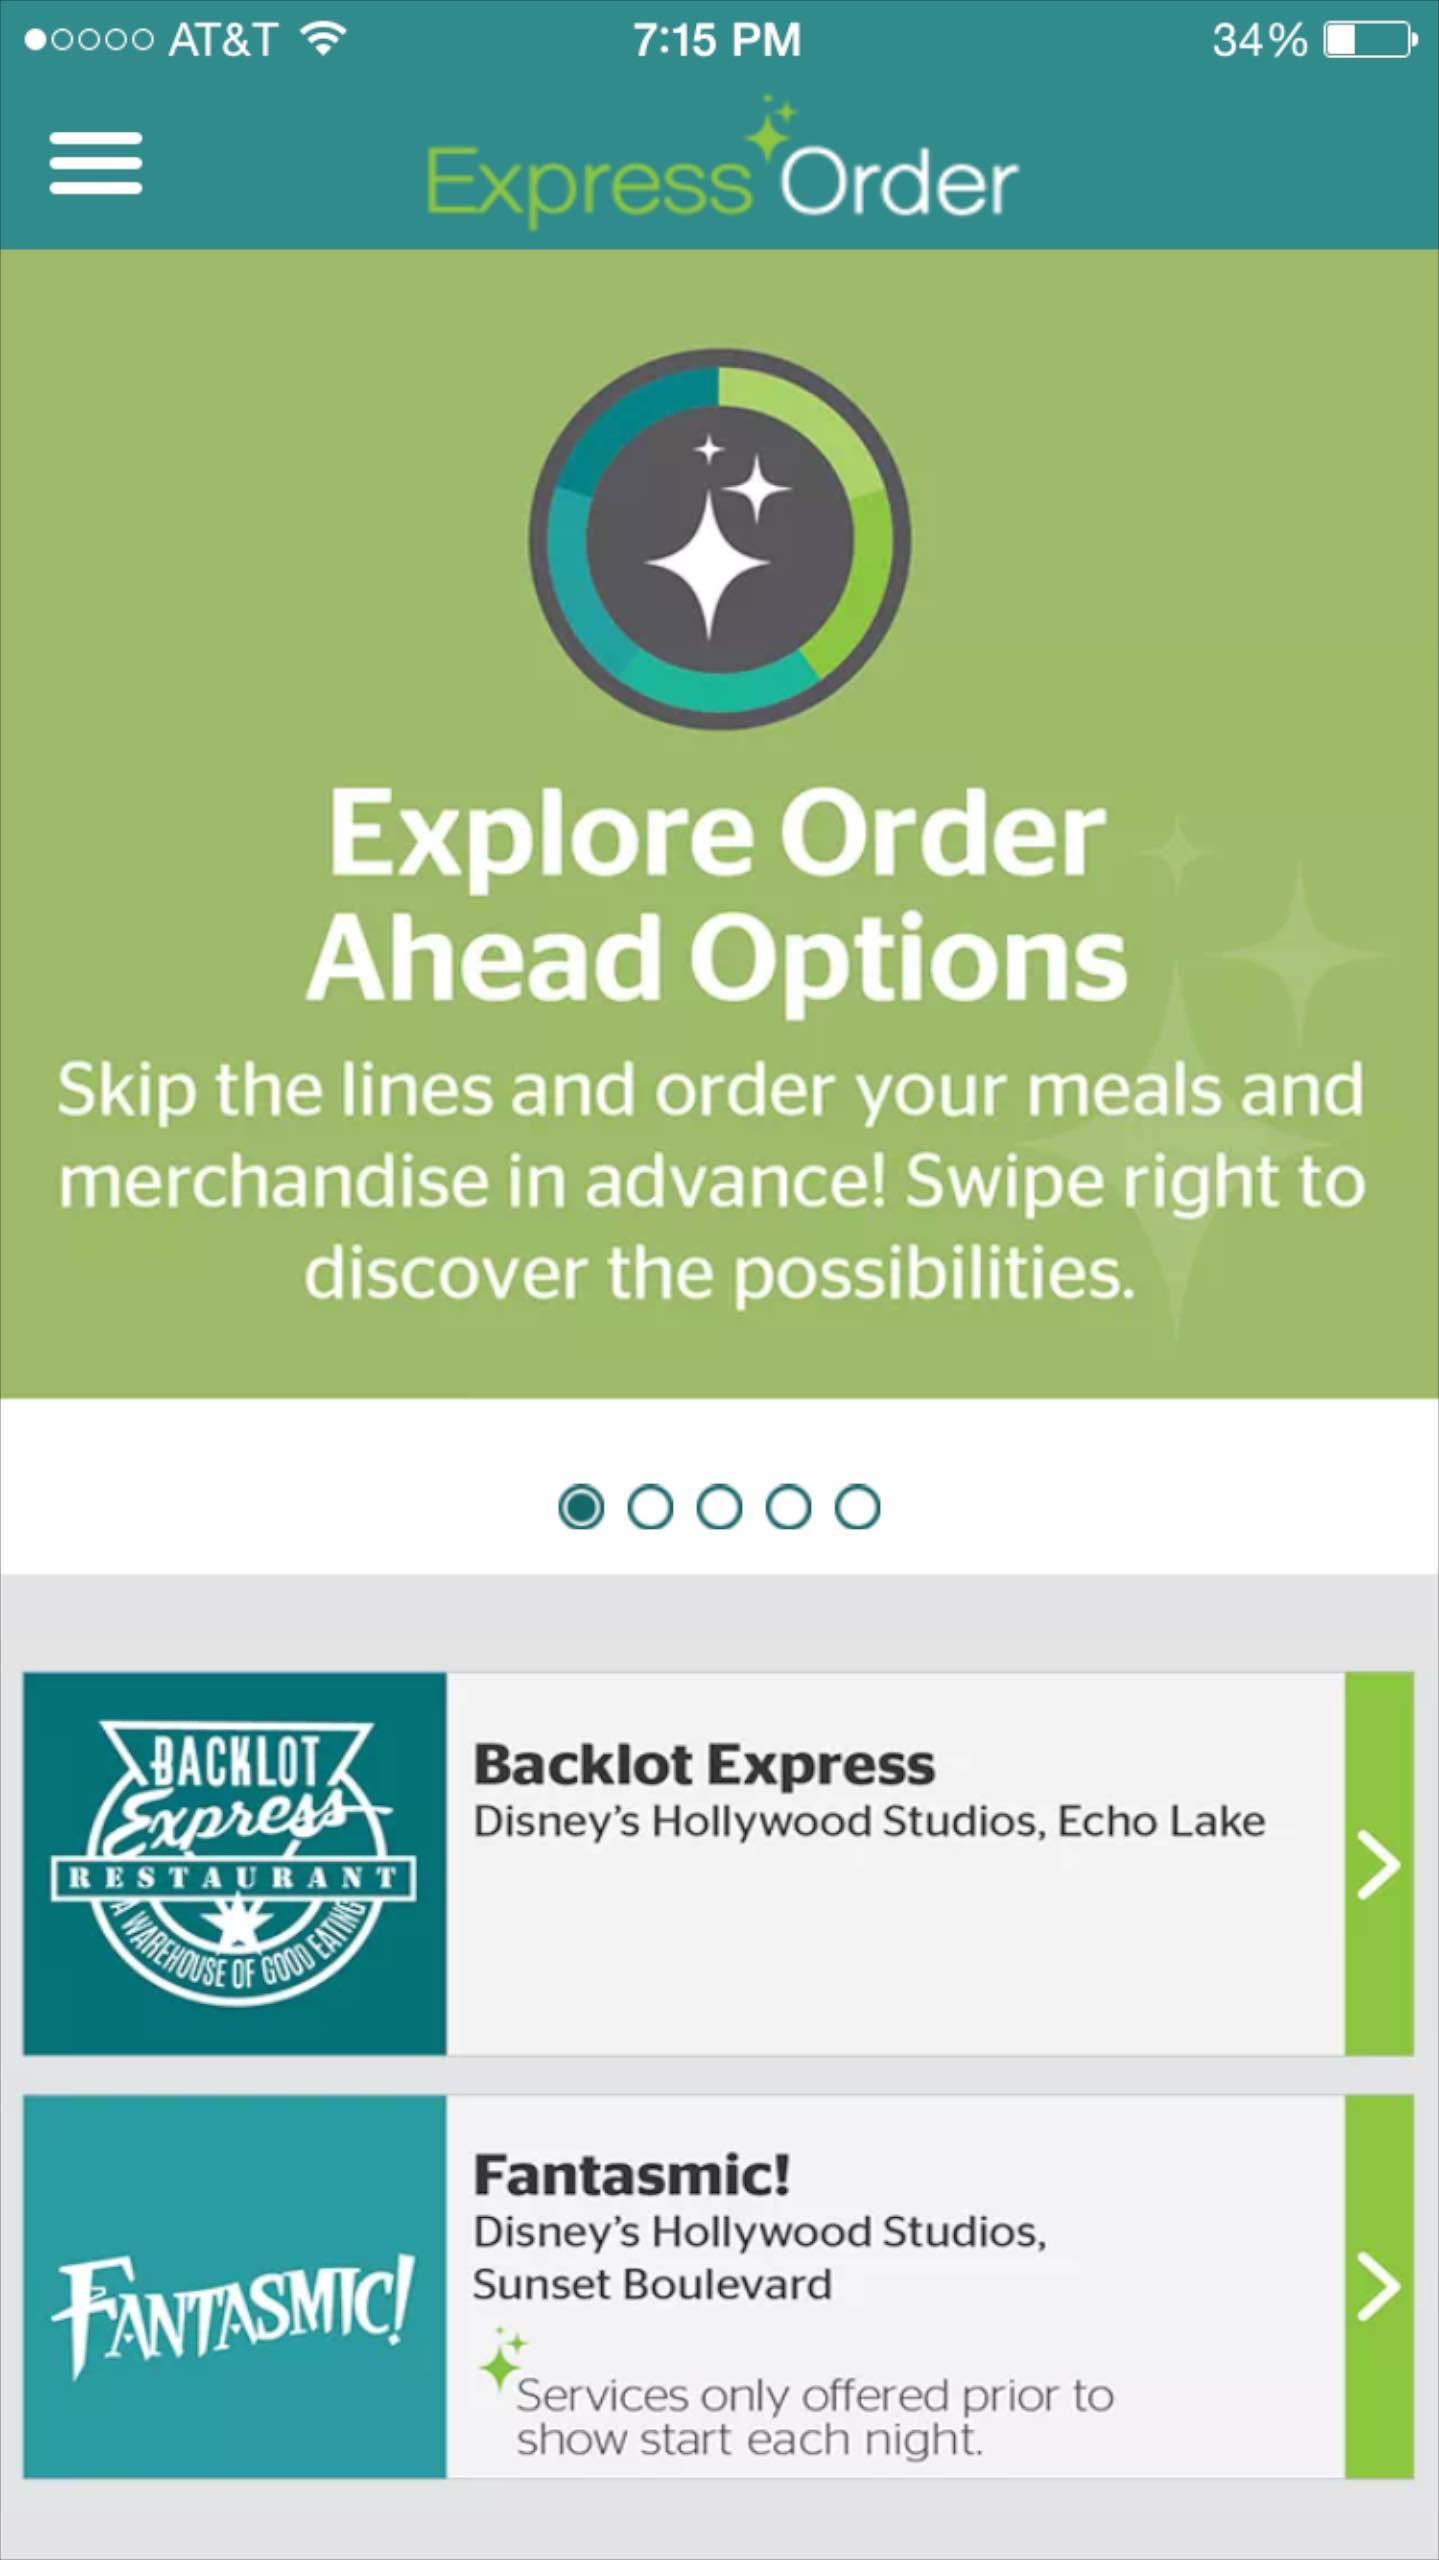 Express Order mobile app